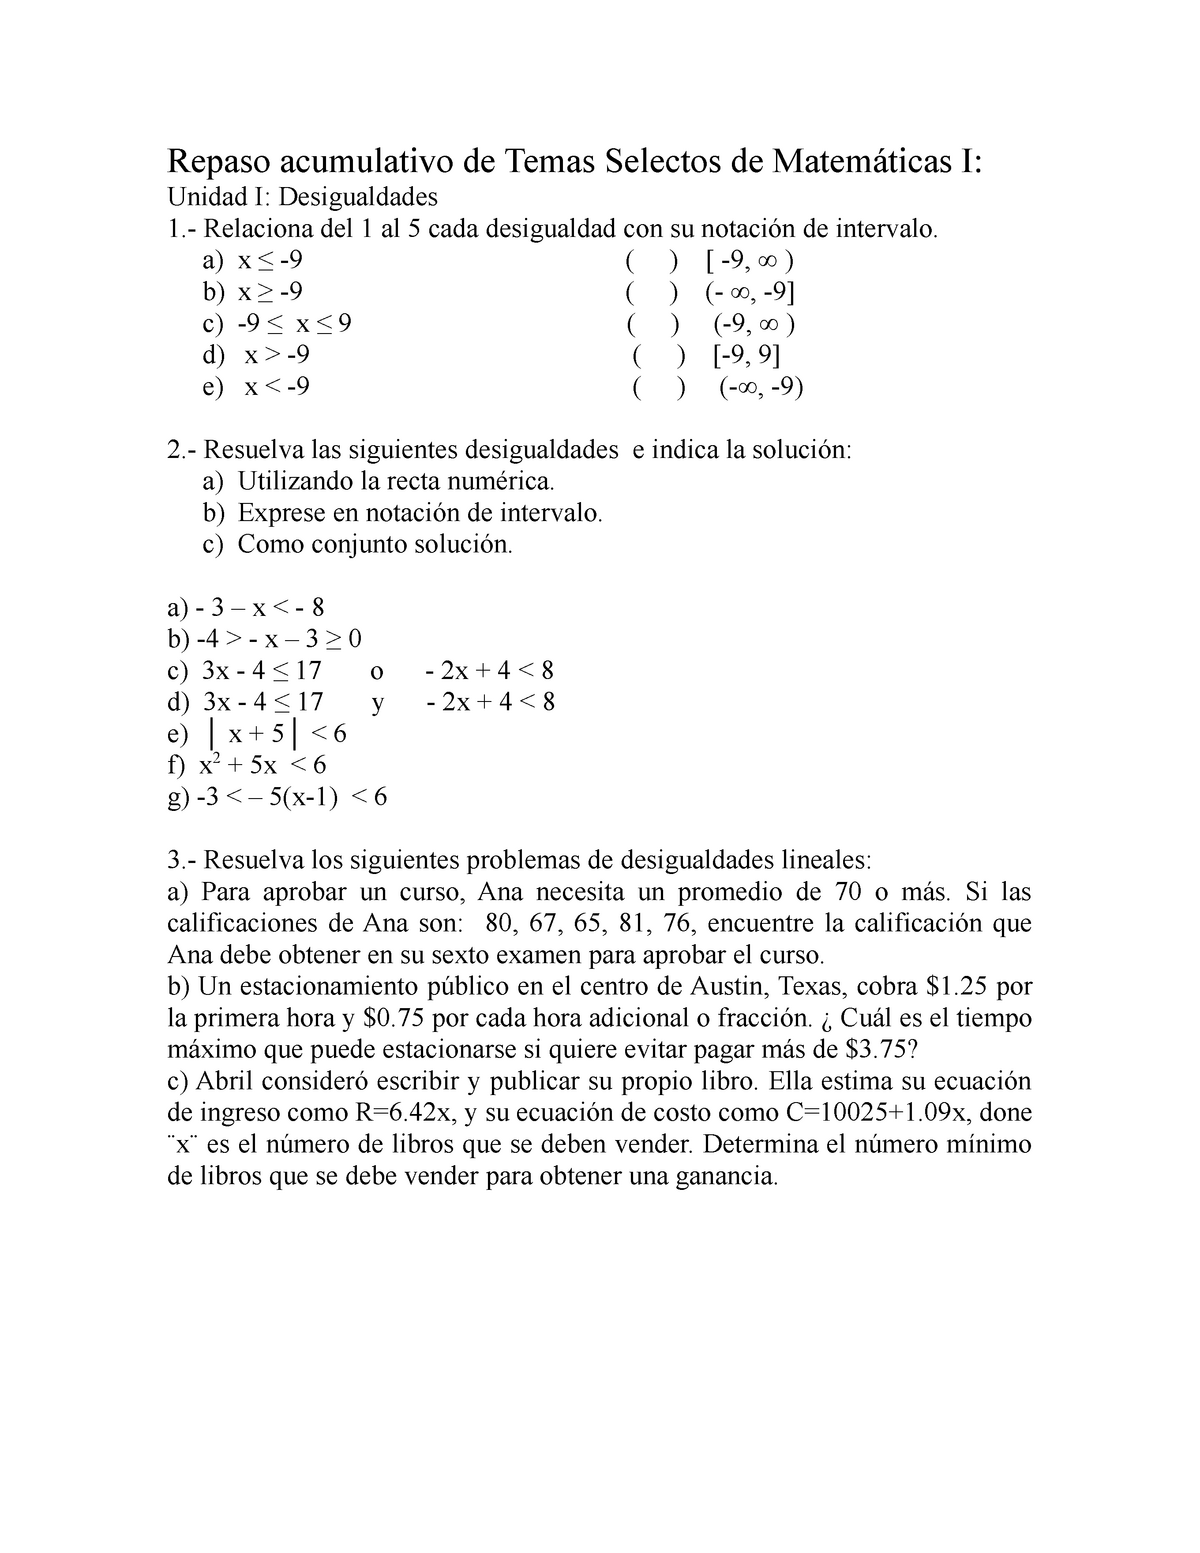 Repaso Acumulativo De Temas Selectos De Matemáticas I 2020 Repaso Acumulativo De Temas 1716